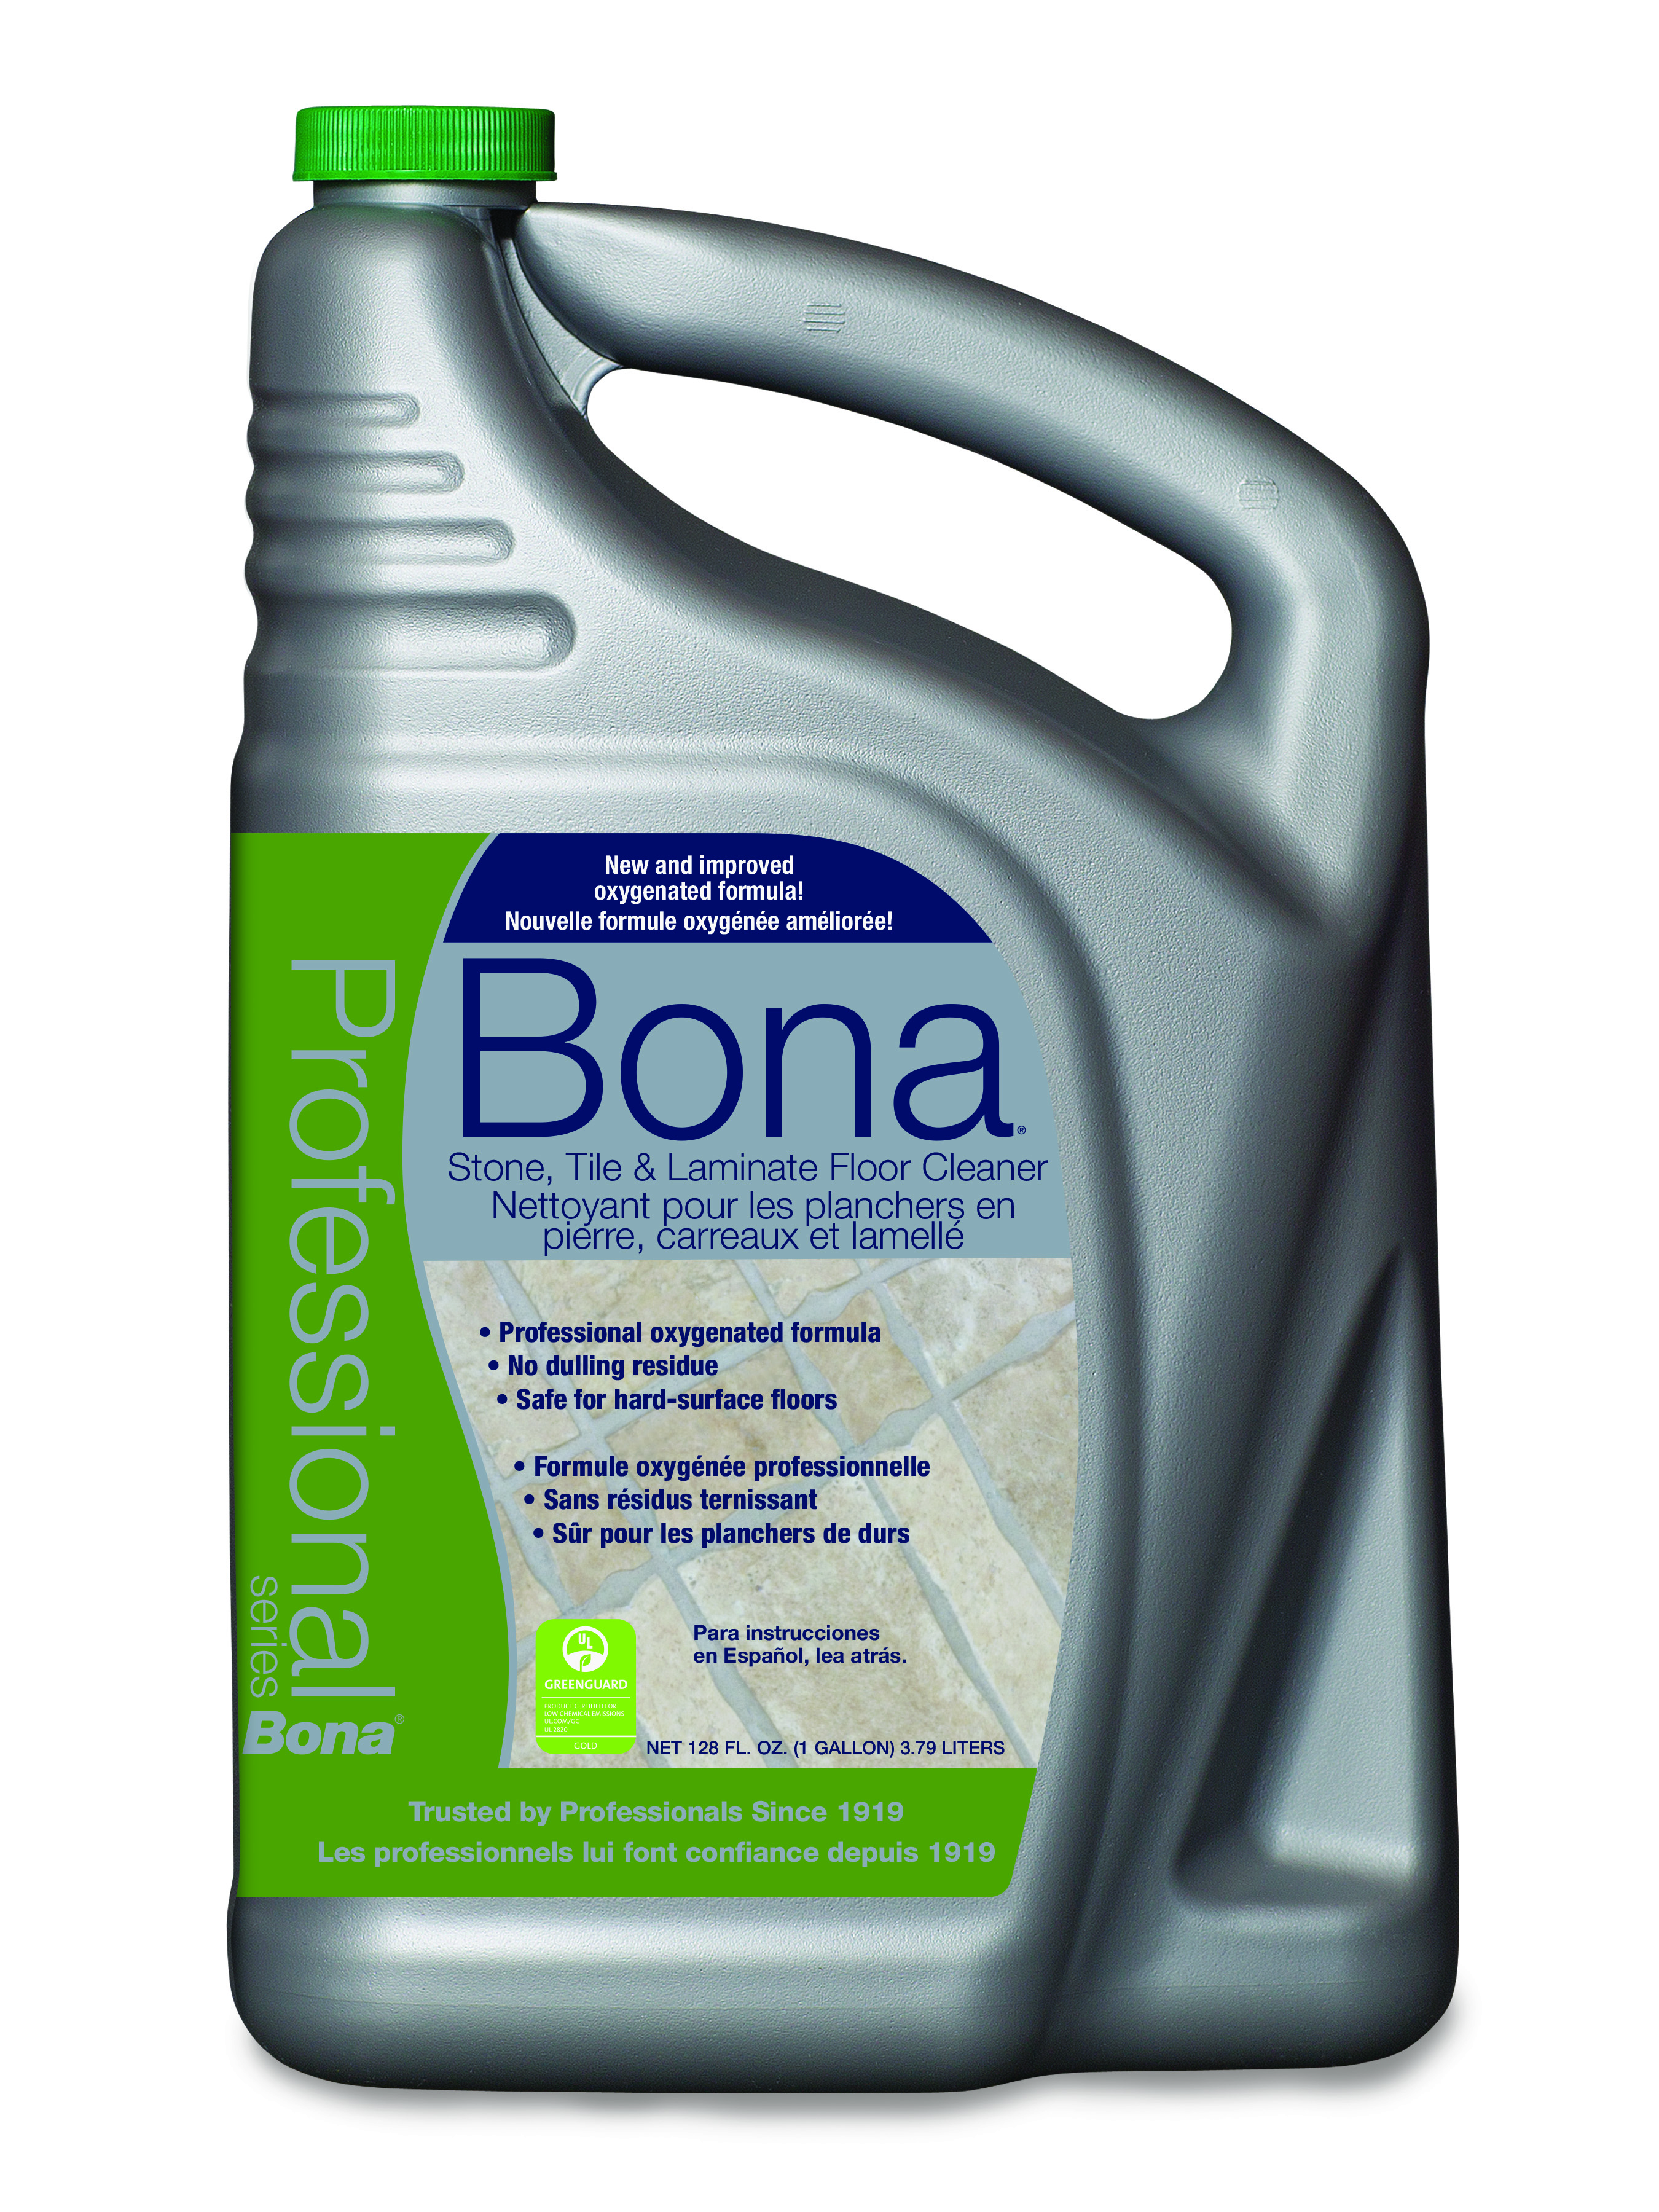 Bona Pro Series Stone, Tile & Laminate Floor Cleaner, 1 gal Refill Bottle - image 1 of 2